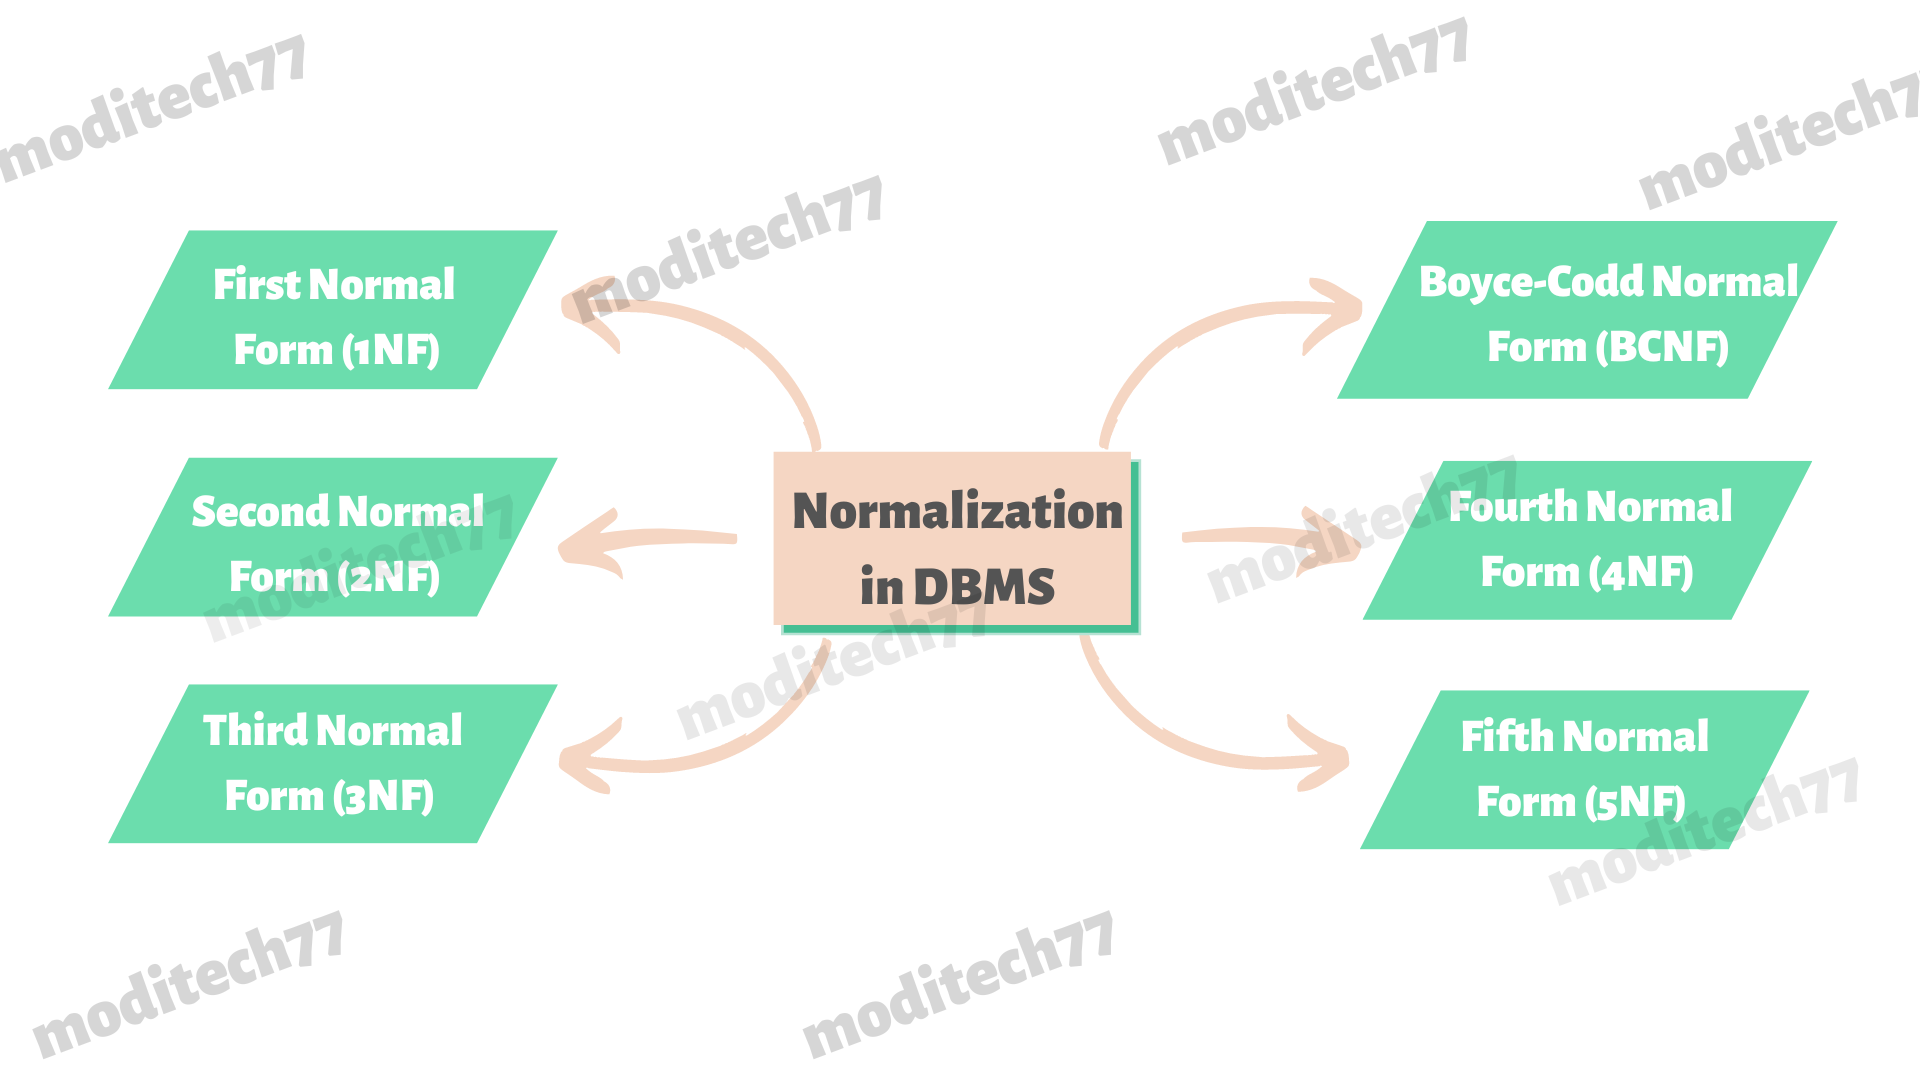 Normalization in DBMS